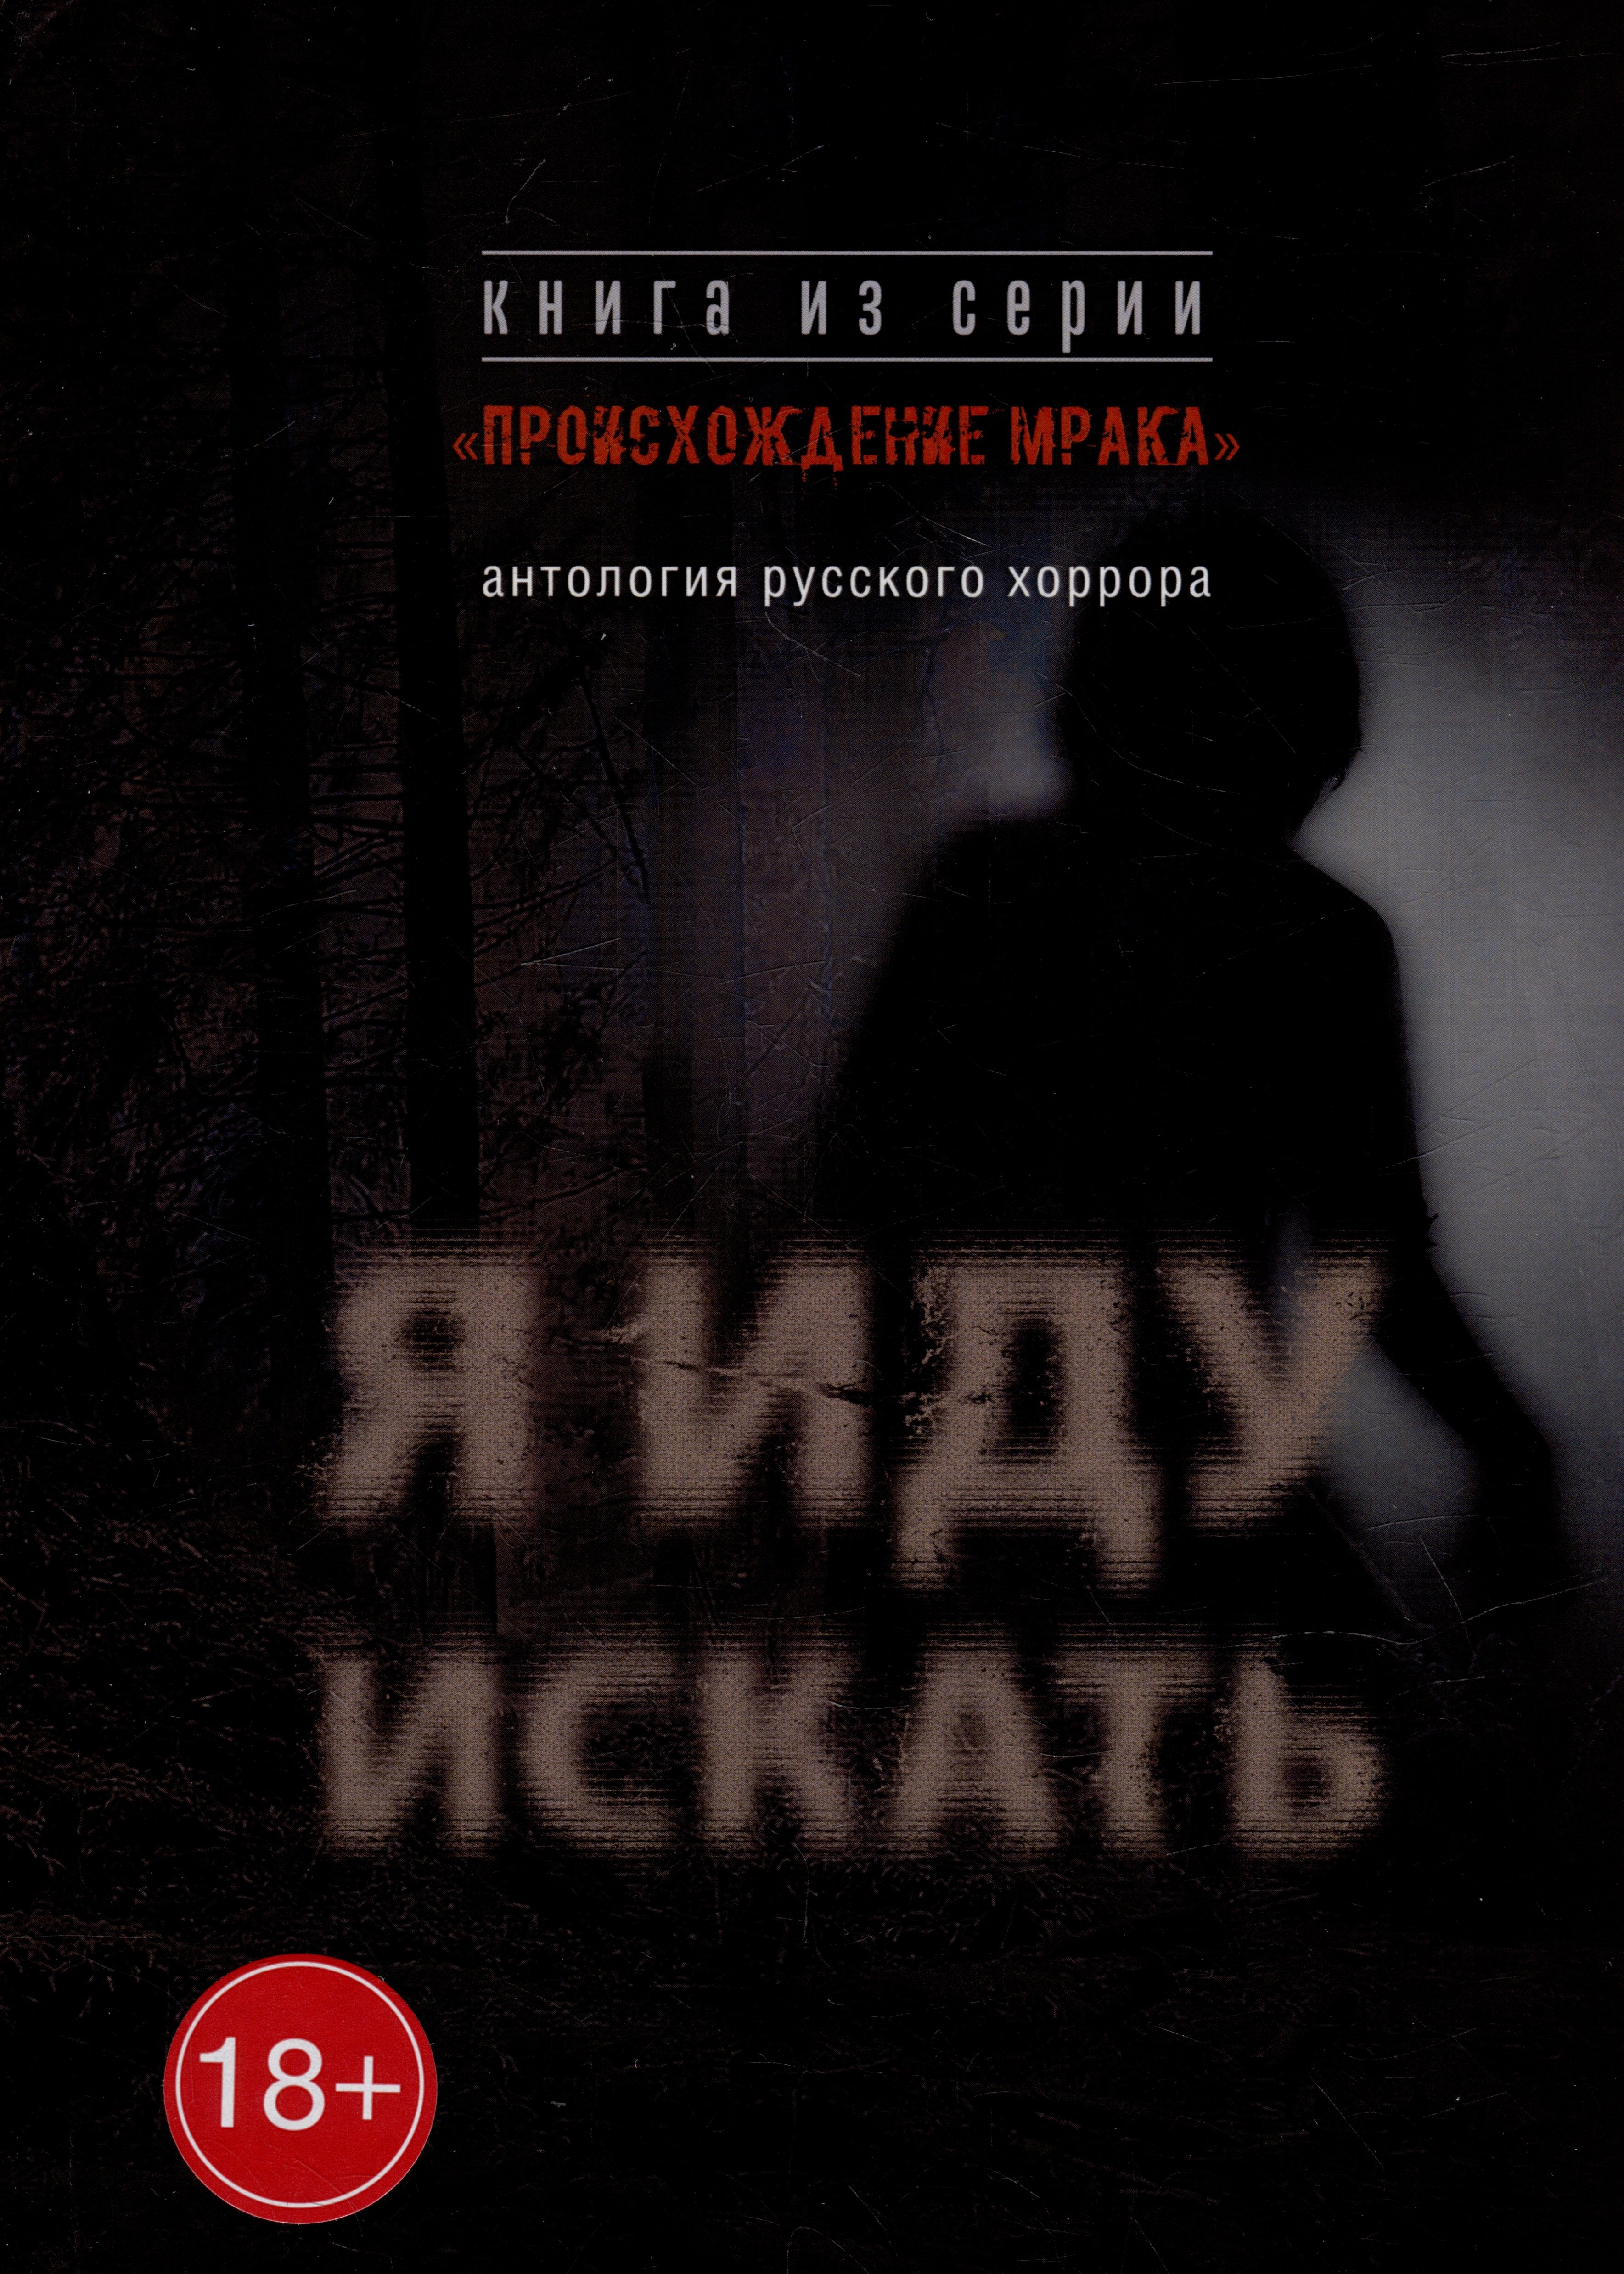 Я иду искать: антология русского хоррора из серии «Происхождение мрака»